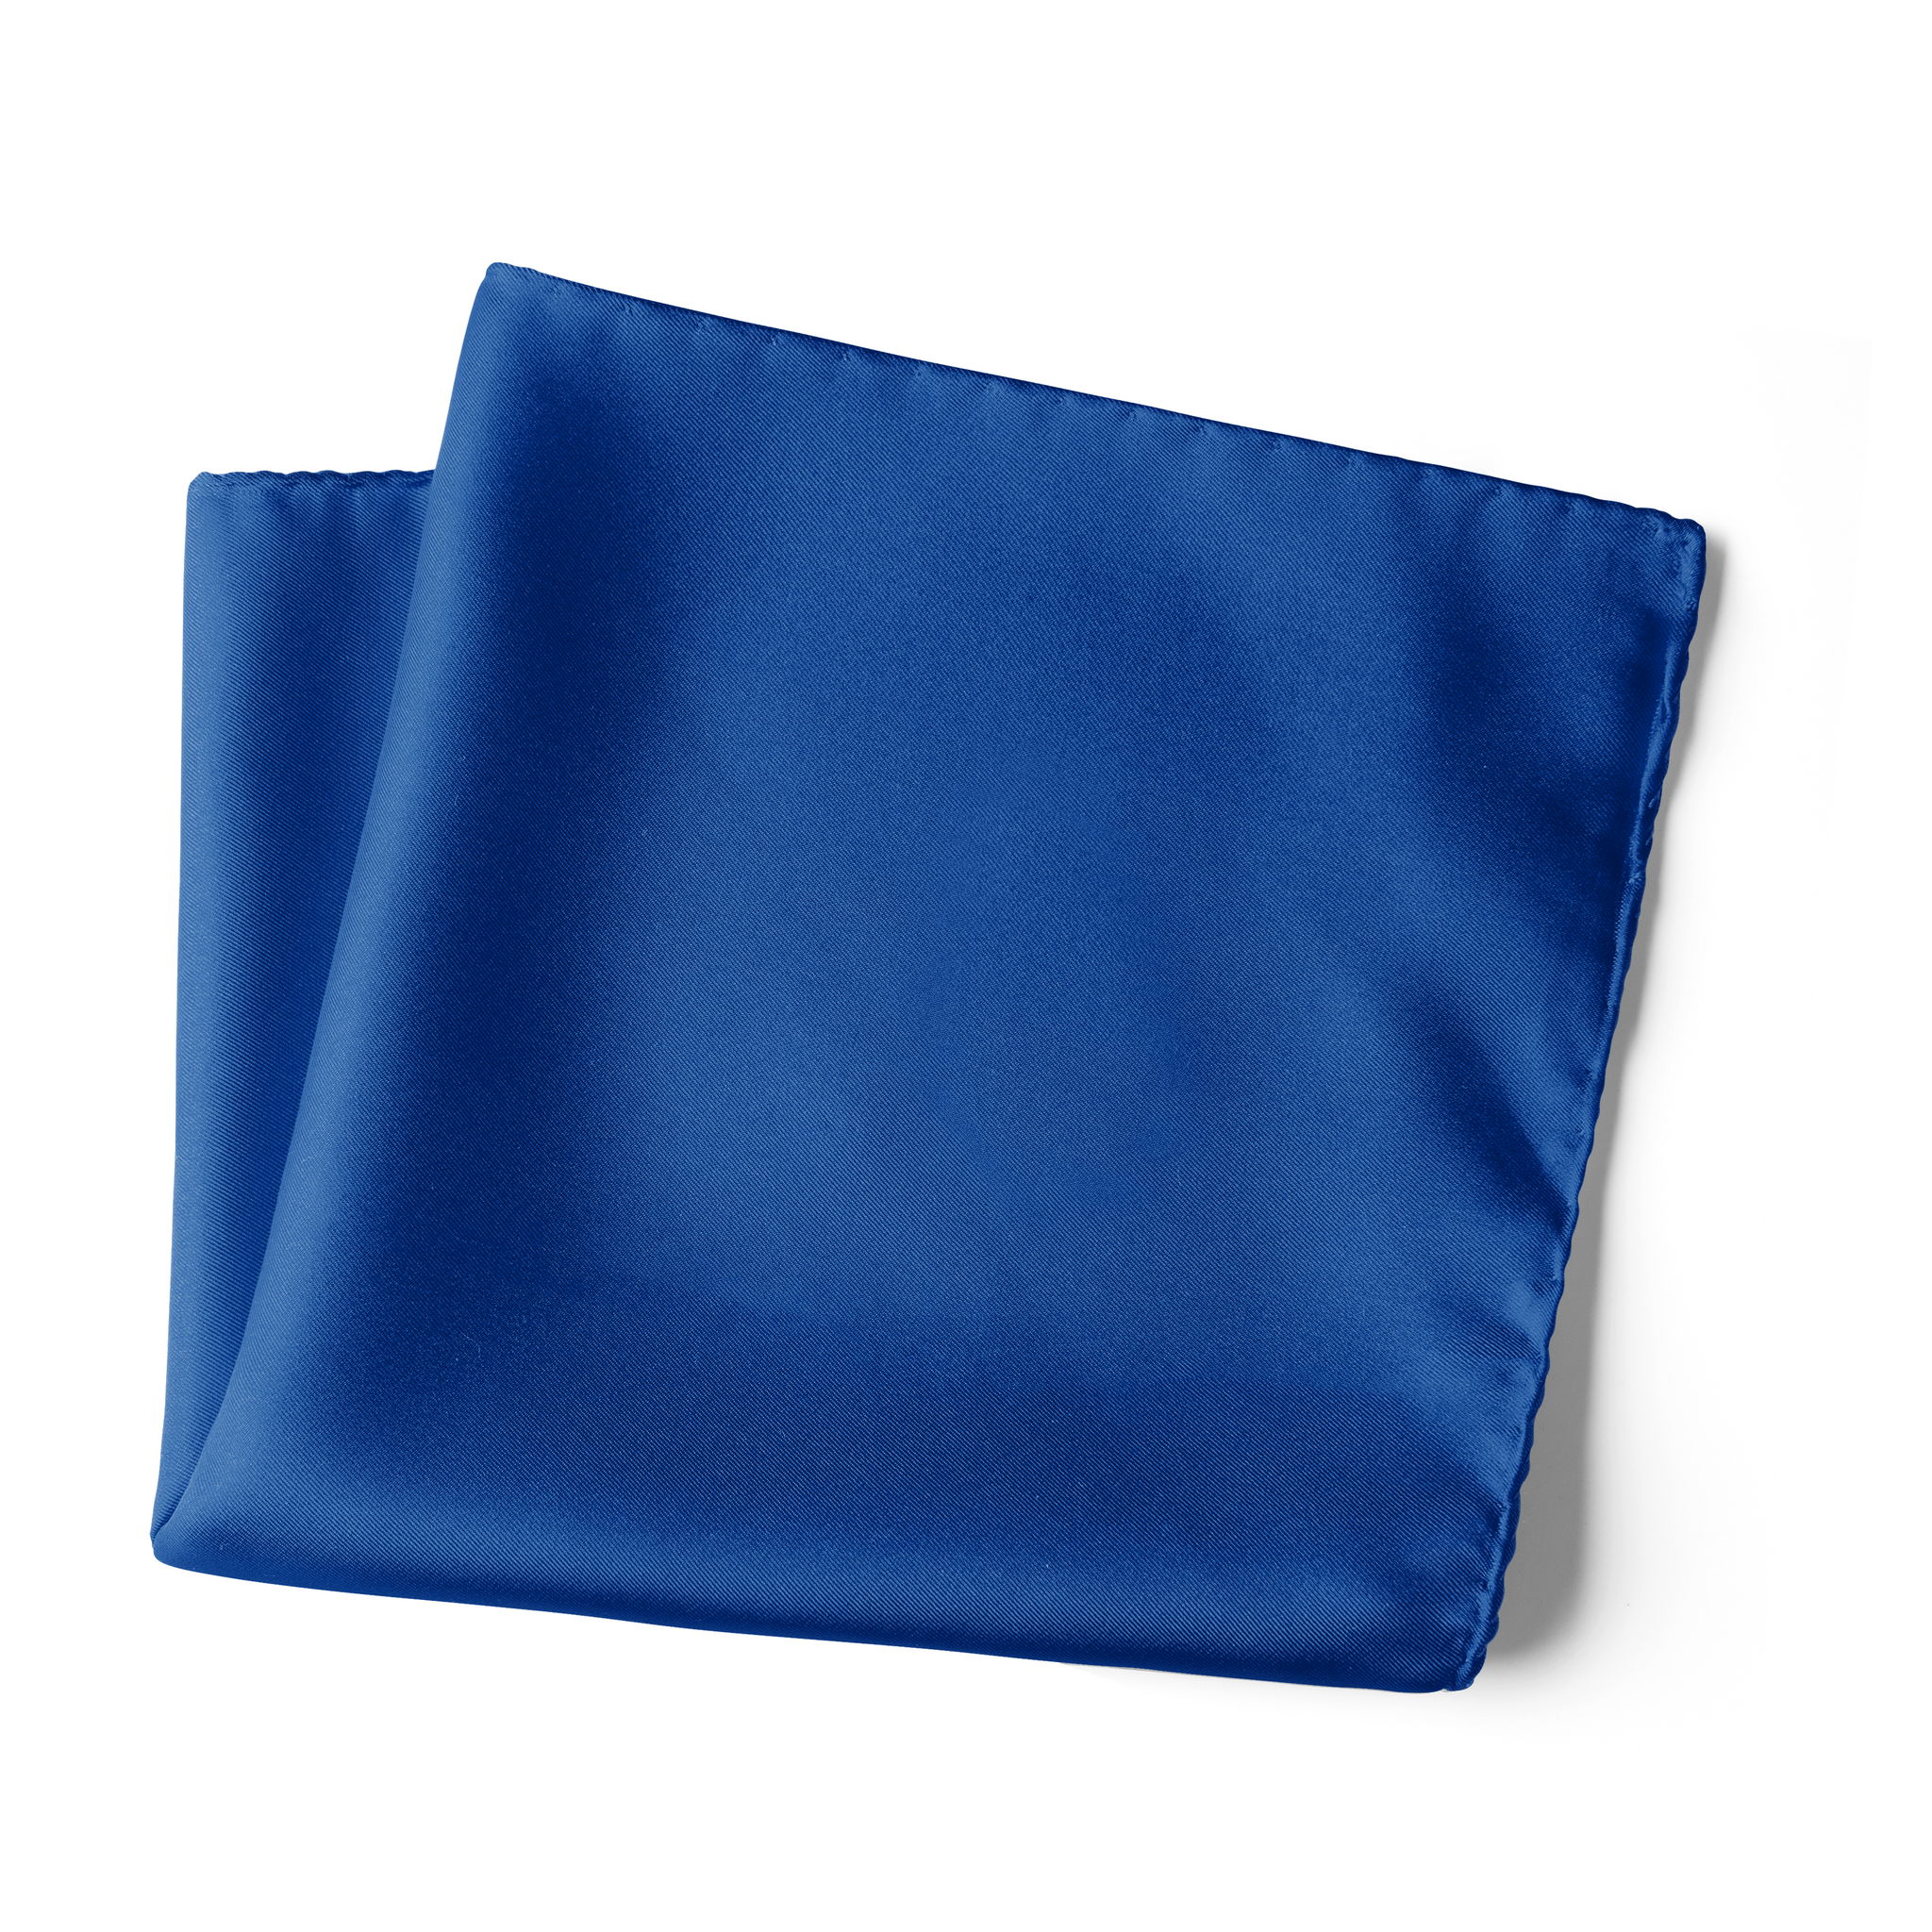 Chokore Peacock Blue Pocket Square - the Solids line